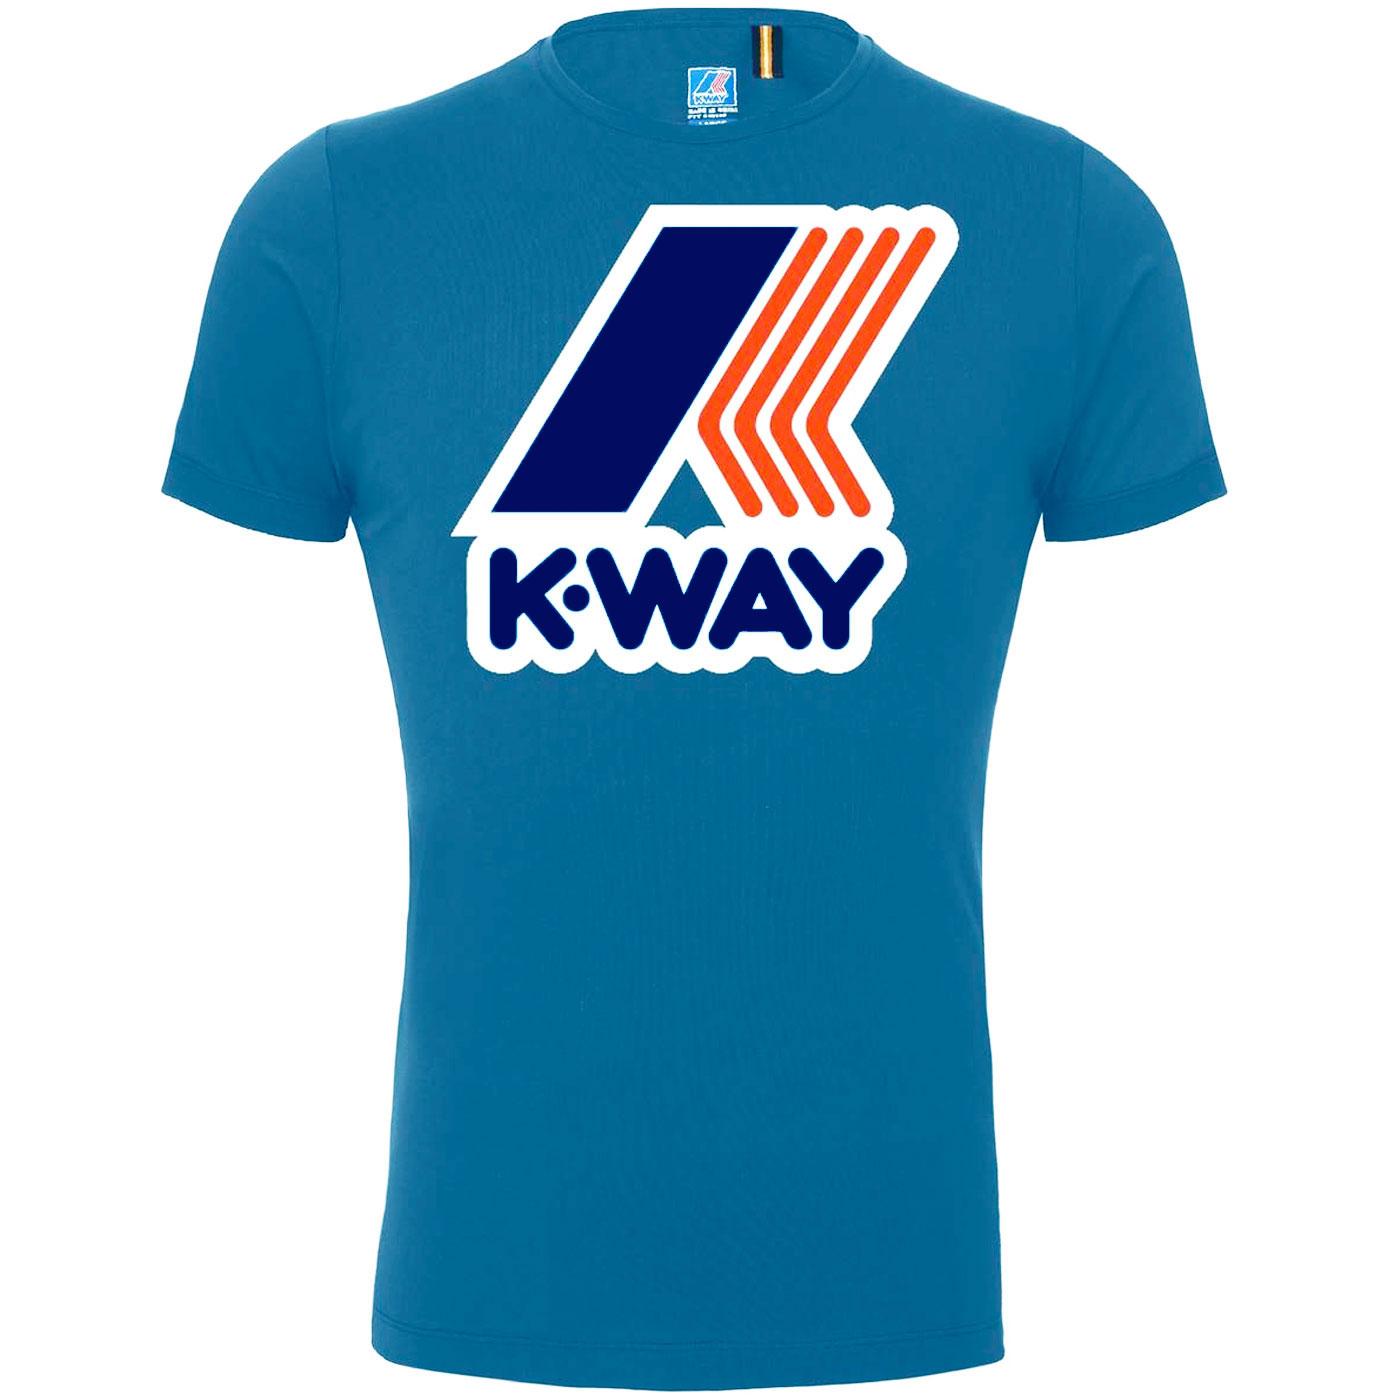 K-WAY Pete Macro Logo Retro 1980s Tee (Blue Avio)